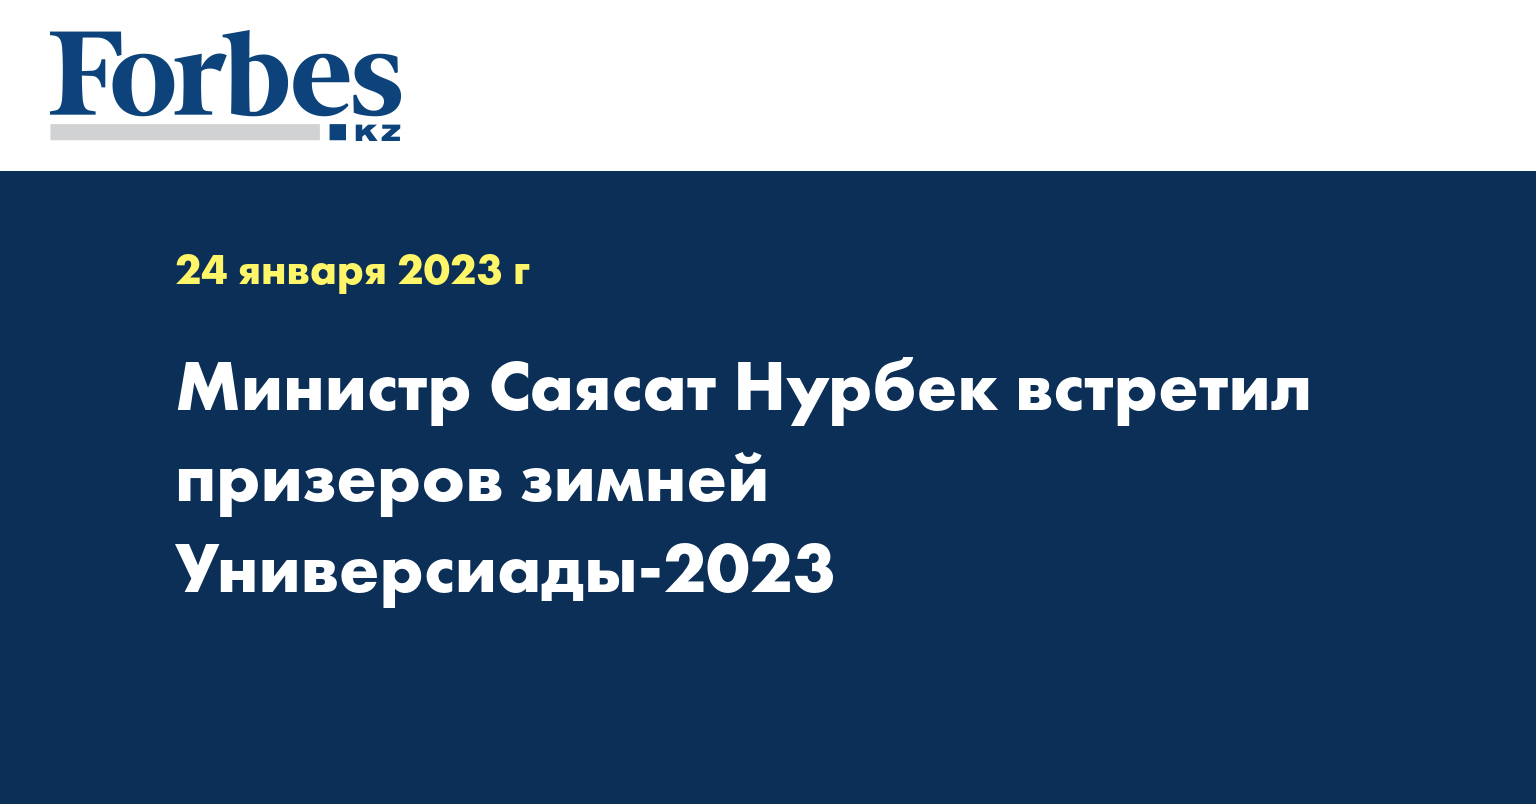 Министр Саясат Нурбек встретил призеров зимней Универсиады-2023